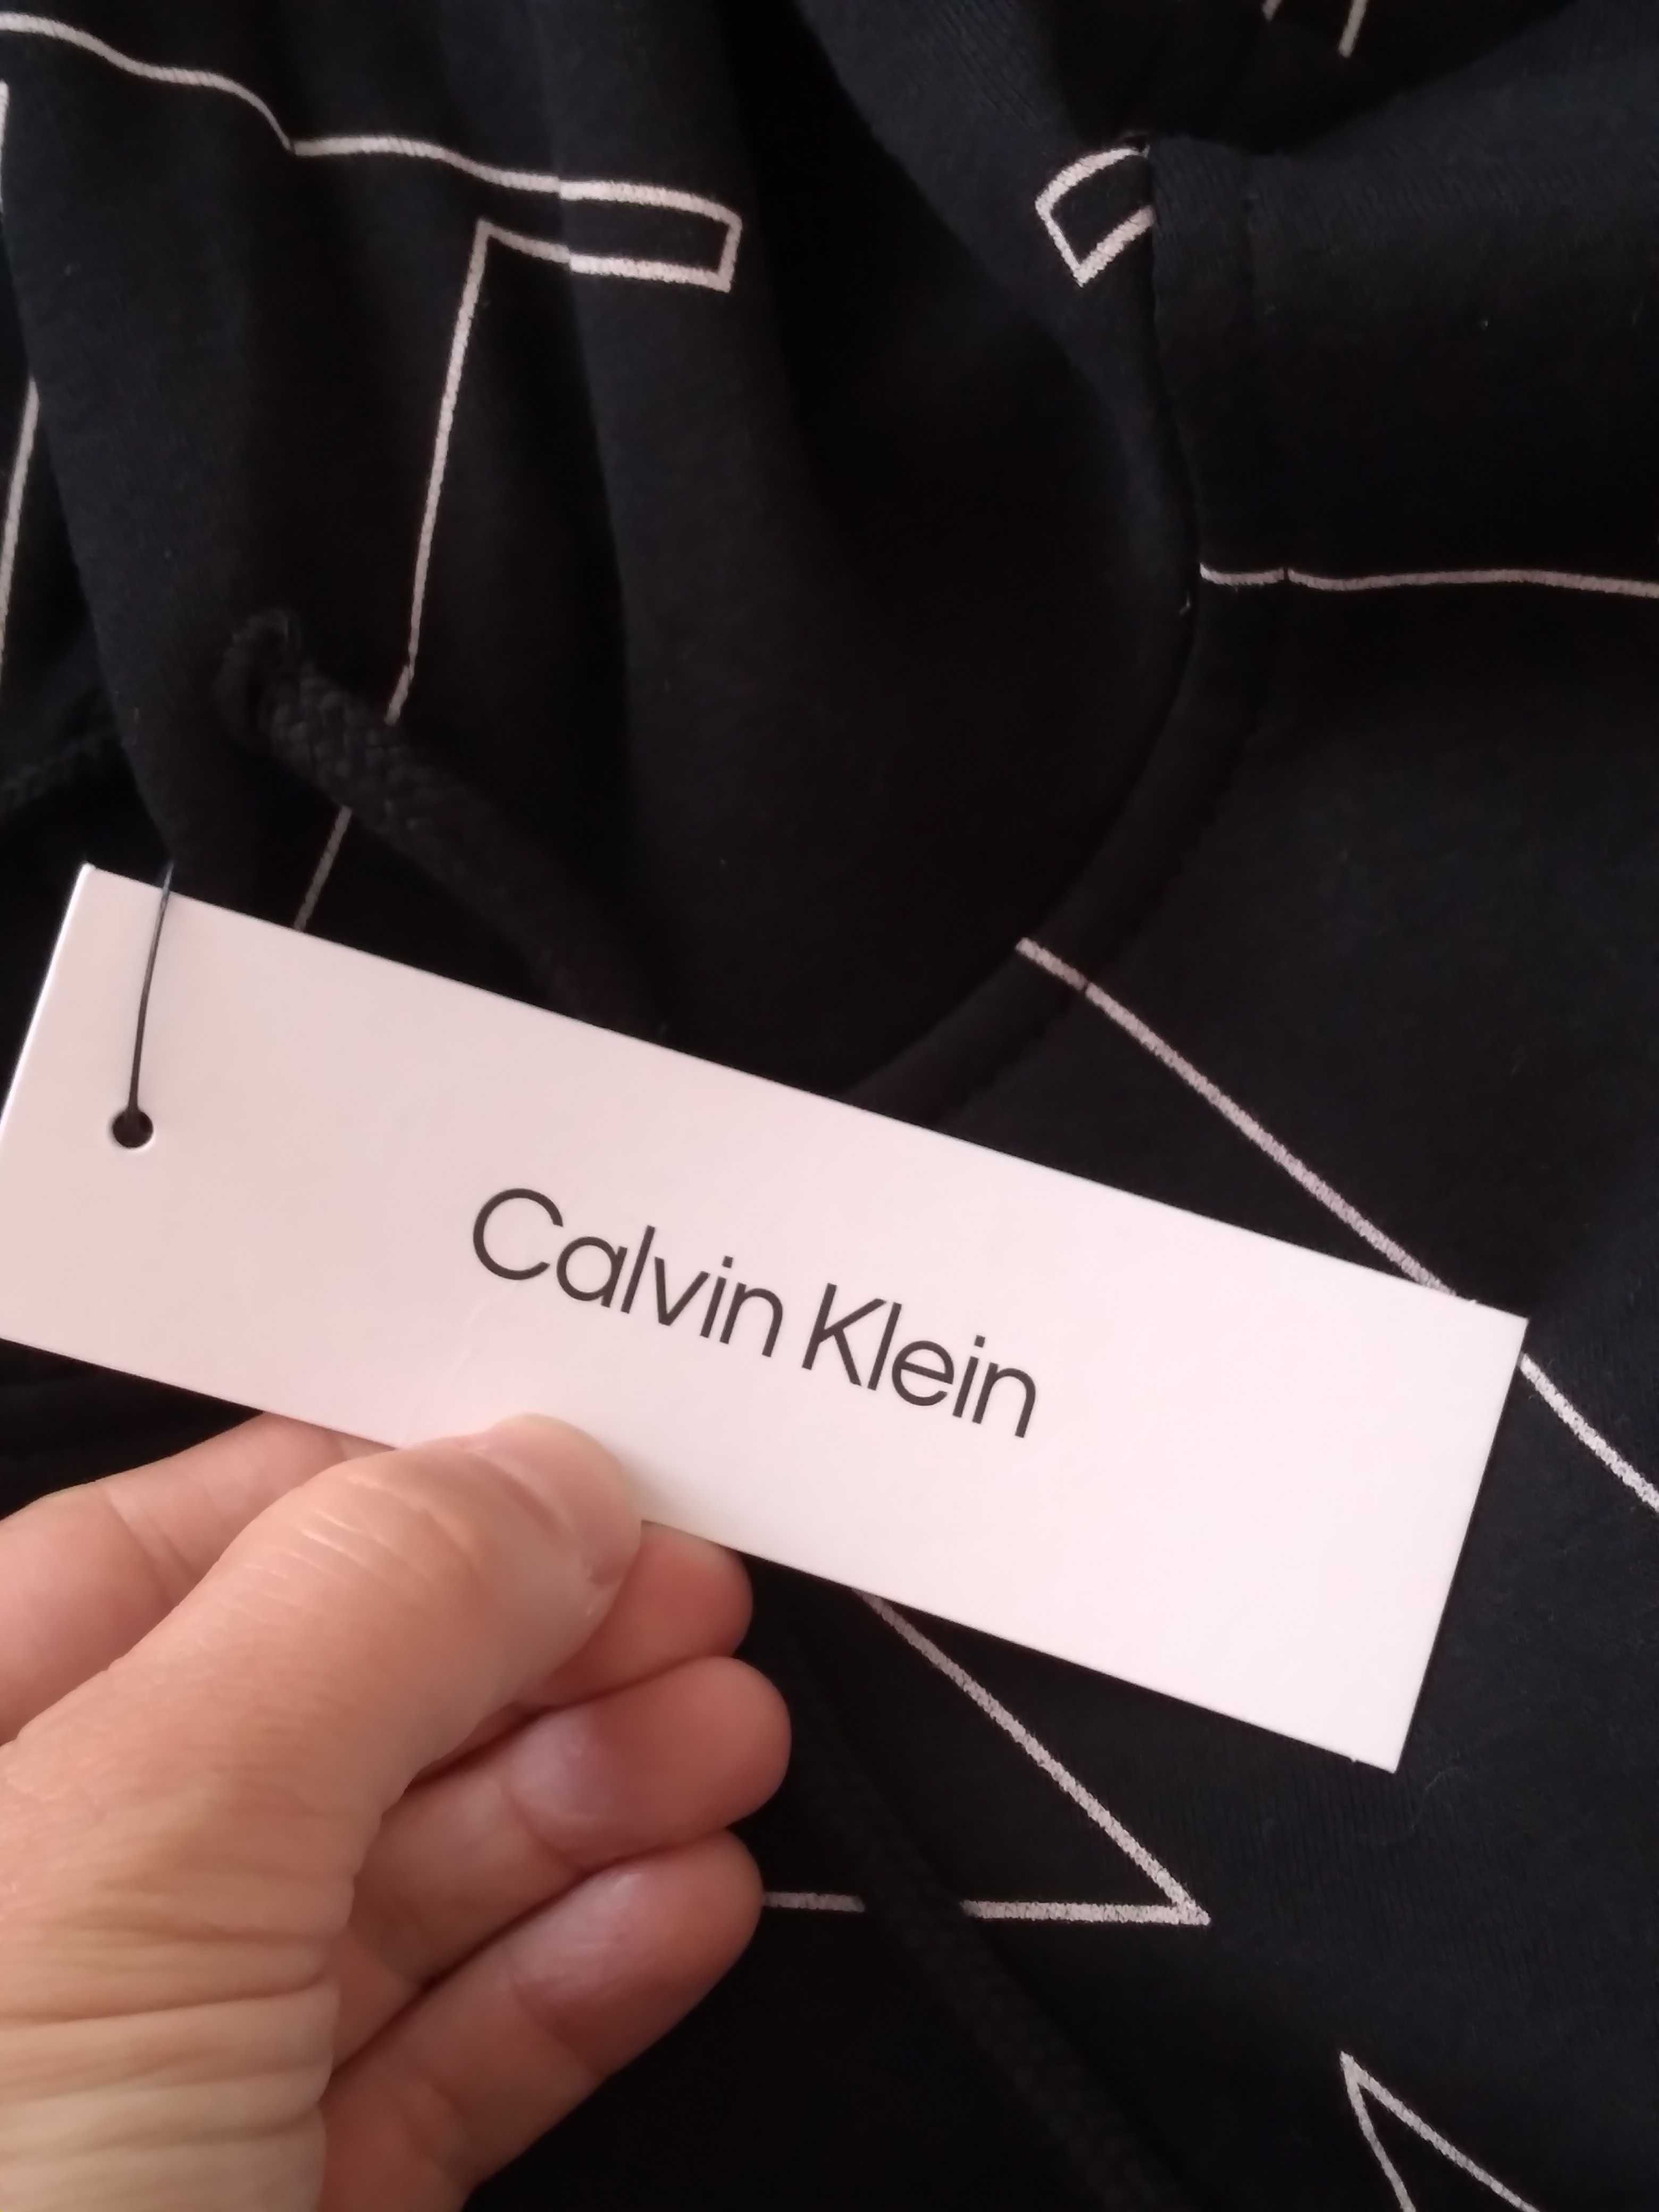 Bluza z kapturem męska Calvin Klein 2XL/3XL czarna